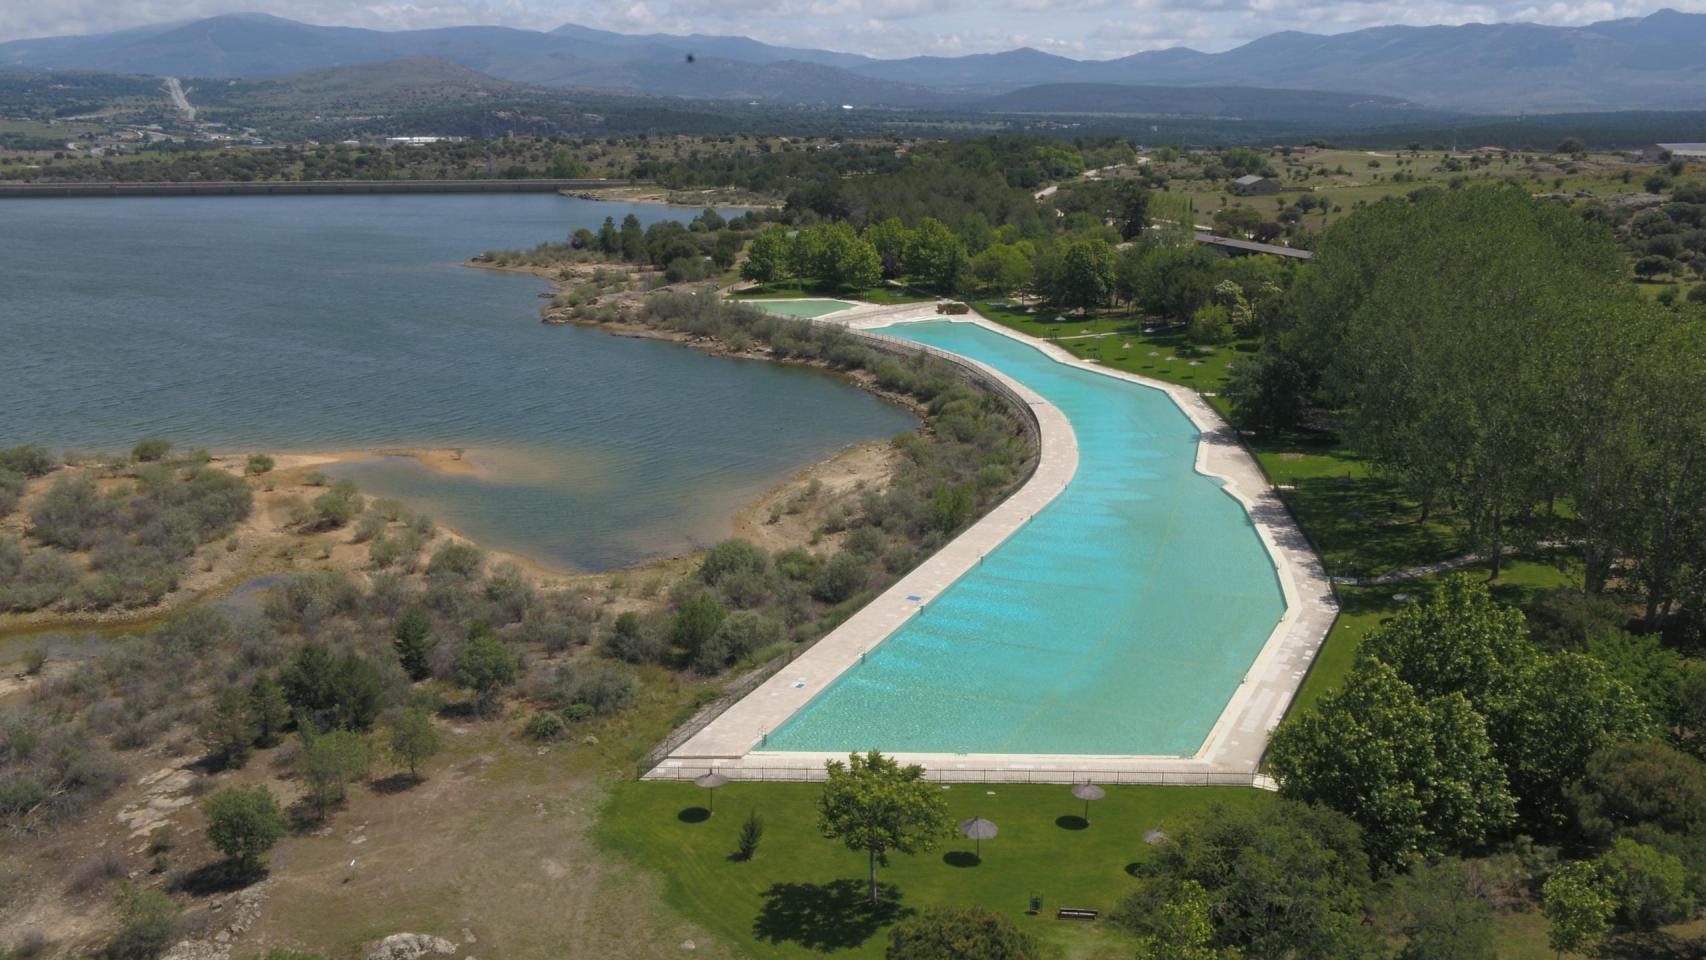 La piscina gigante de Riosequillo, en Buitrago de Lozoya. Foto: Serrazar.